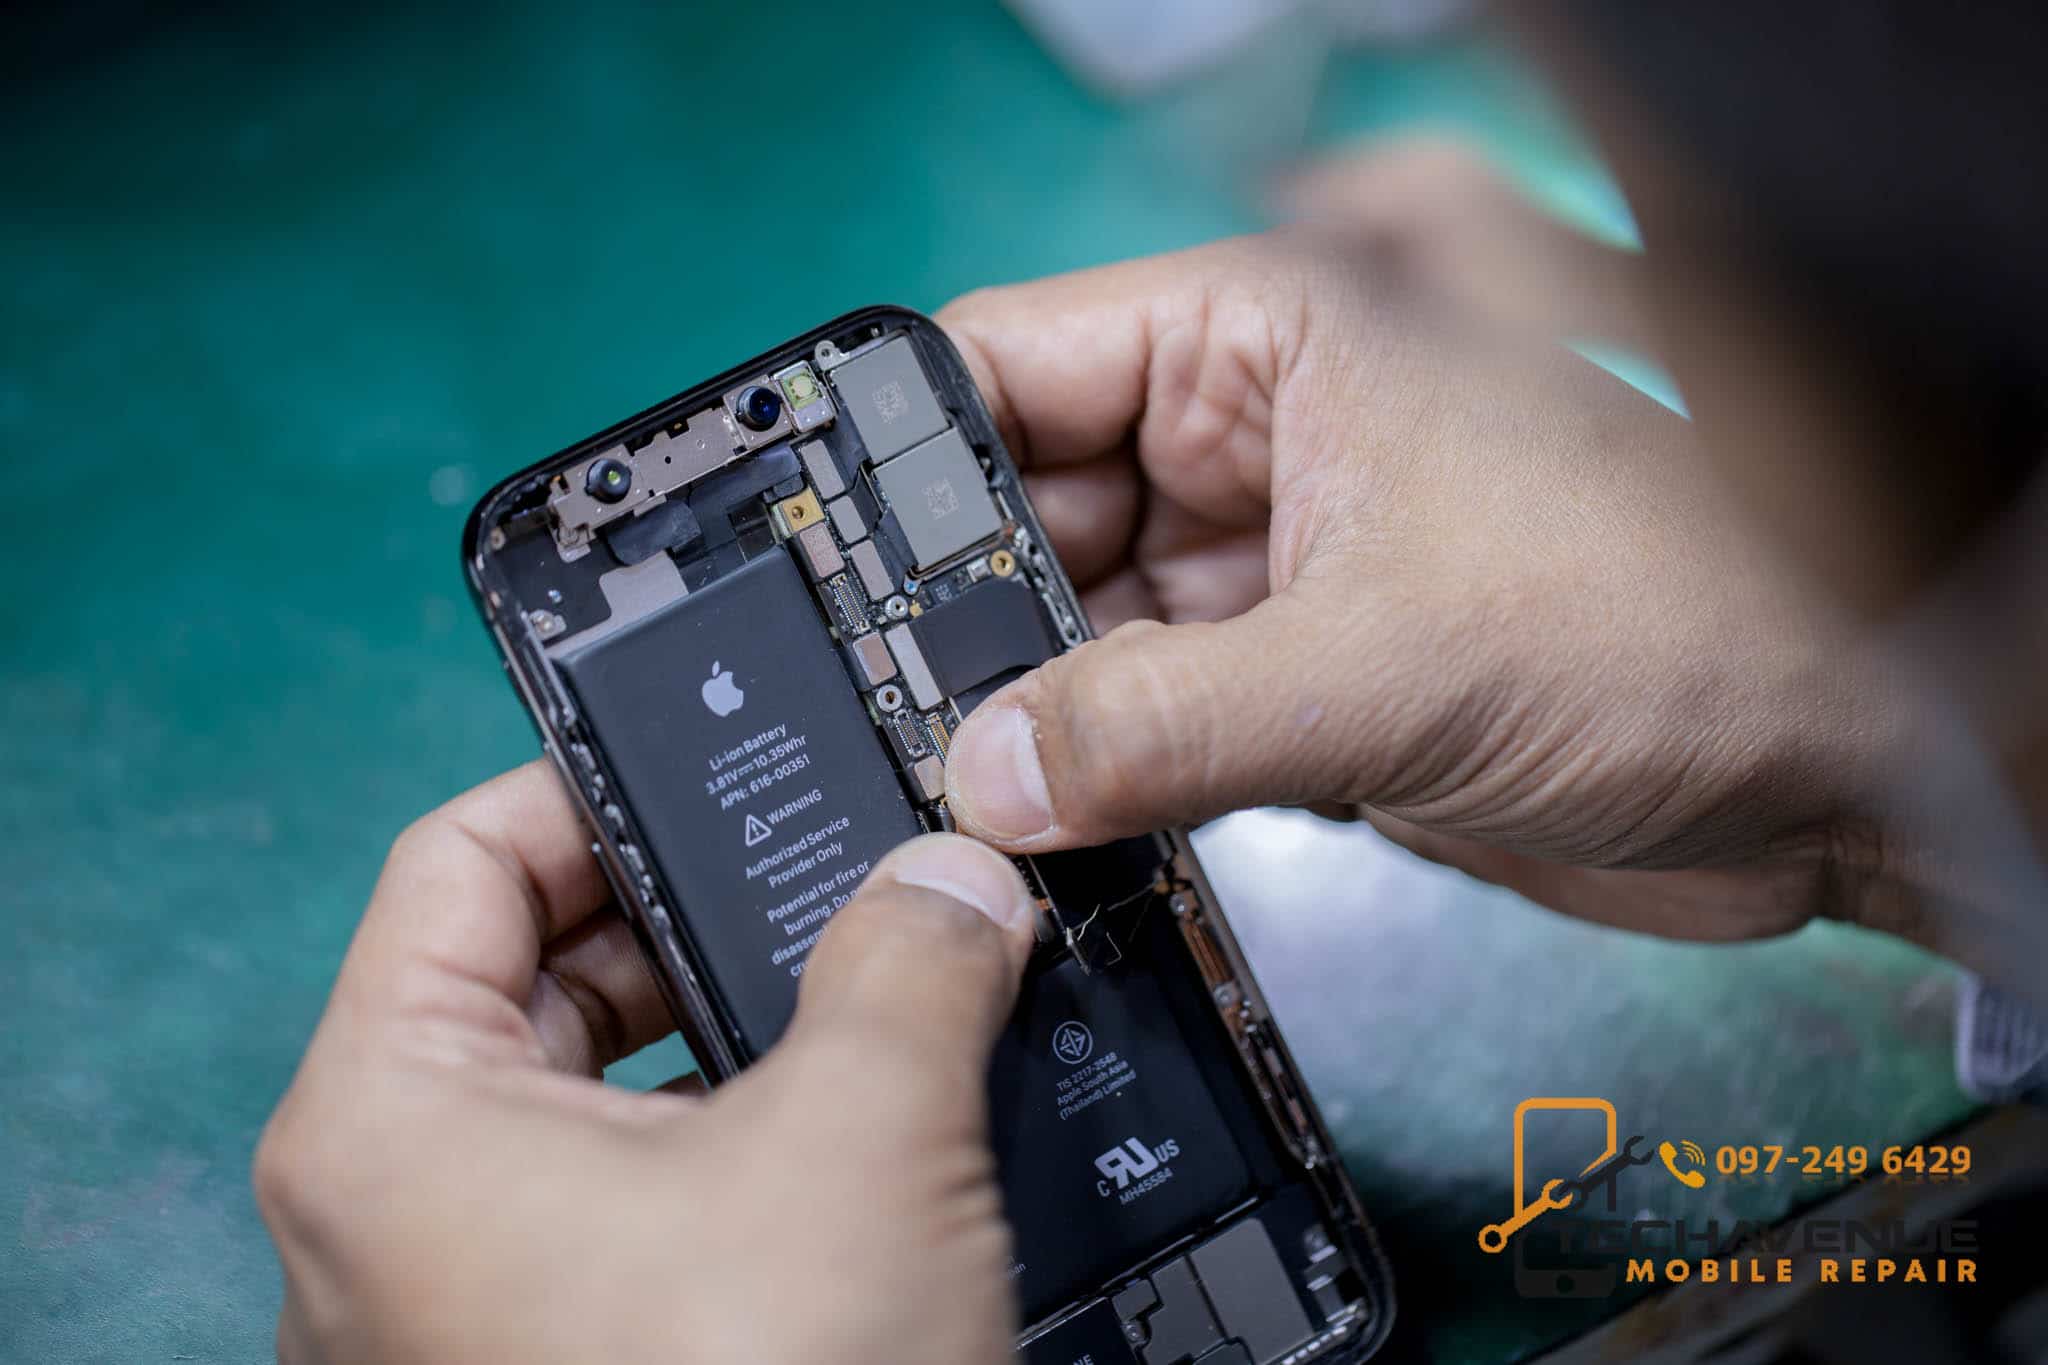 ศูนย์ซ่อมมือถือ ทั่วประเทศไทย ร้านไหนดีบ้าง ให้บริการน่าประทับใจ 🥇 ศูนย์ซ่อม โทรศัพท์มือถือ มือถือทุกรุ่น ทุกยี่ห้อ iPhone | Apple | Samsung | Huawei